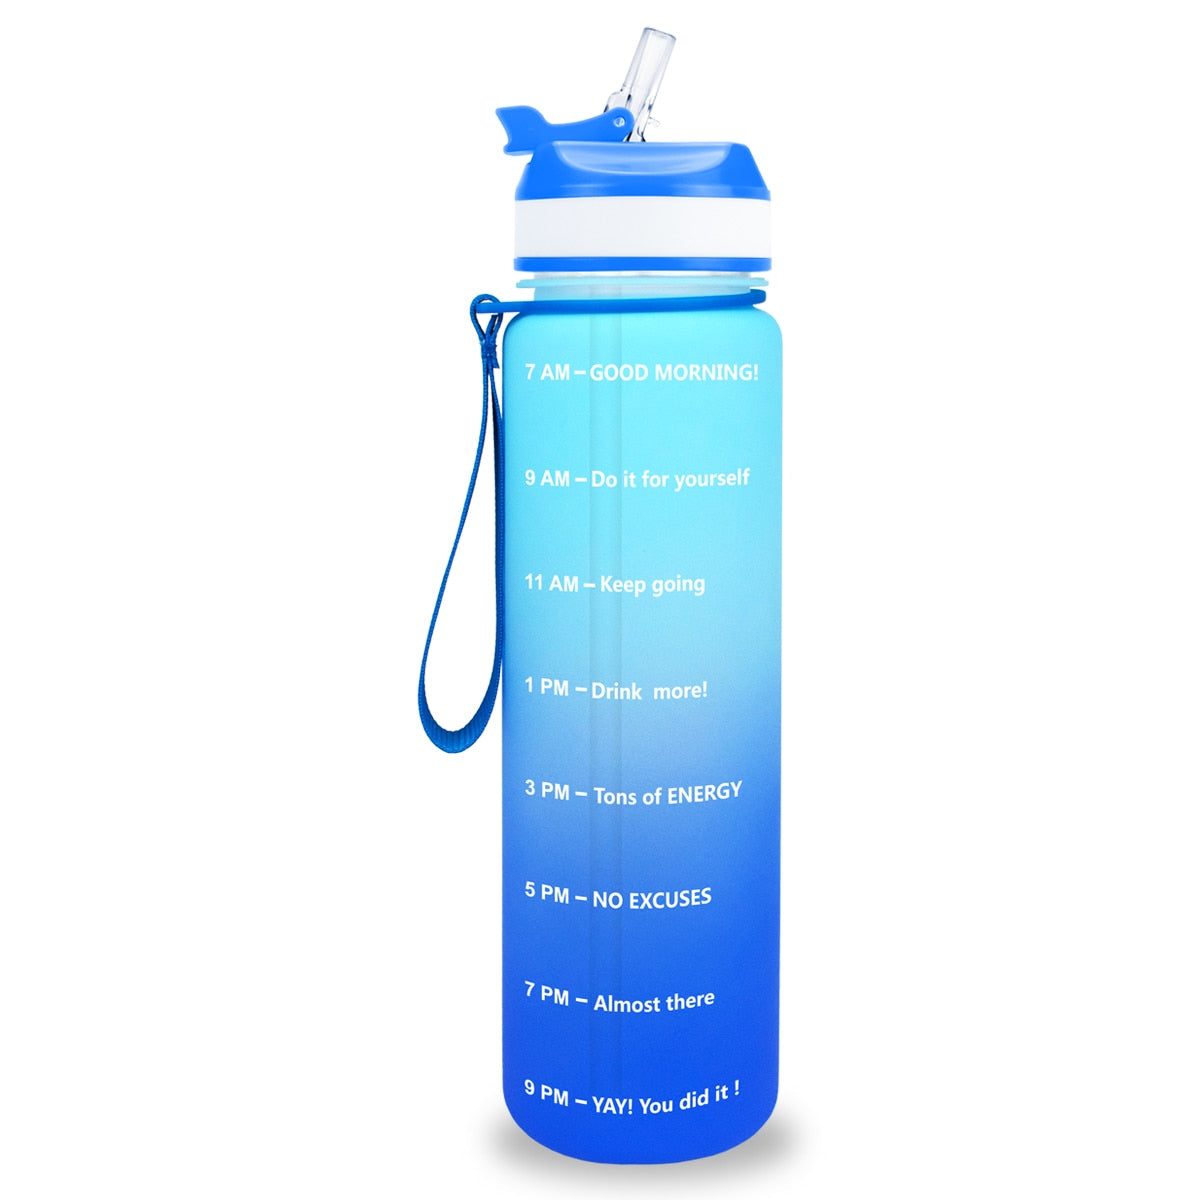 Eine gruen-blaue Sporttrinkflasche mit einer Zeitmarkierungen sowie motivierenden Spruechen für verschiedene Tageszeiten. Die Flasche hat eine blaue Trageschlaufe und einen Deckel mit einem aufklappbaren Trinkverschluss.